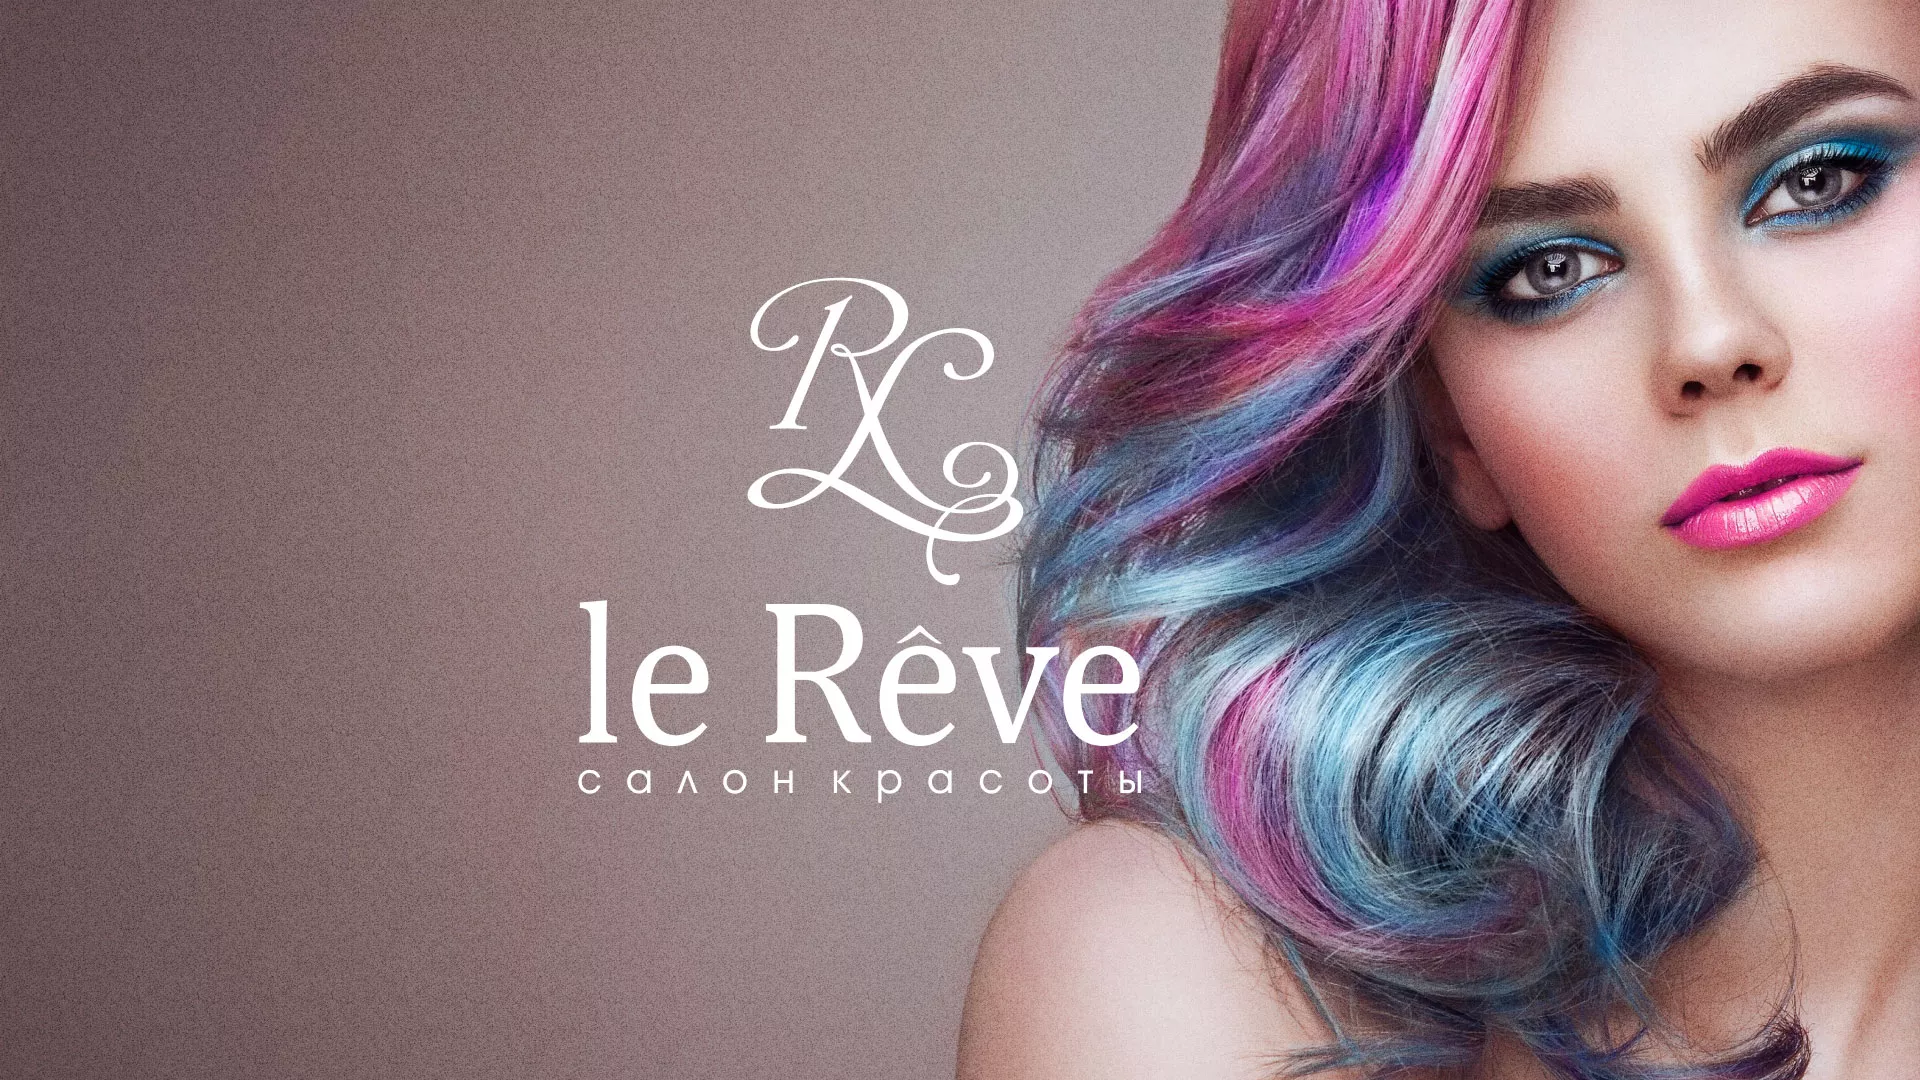 Создание сайта для салона красоты «Le Reve» в Слюдянке